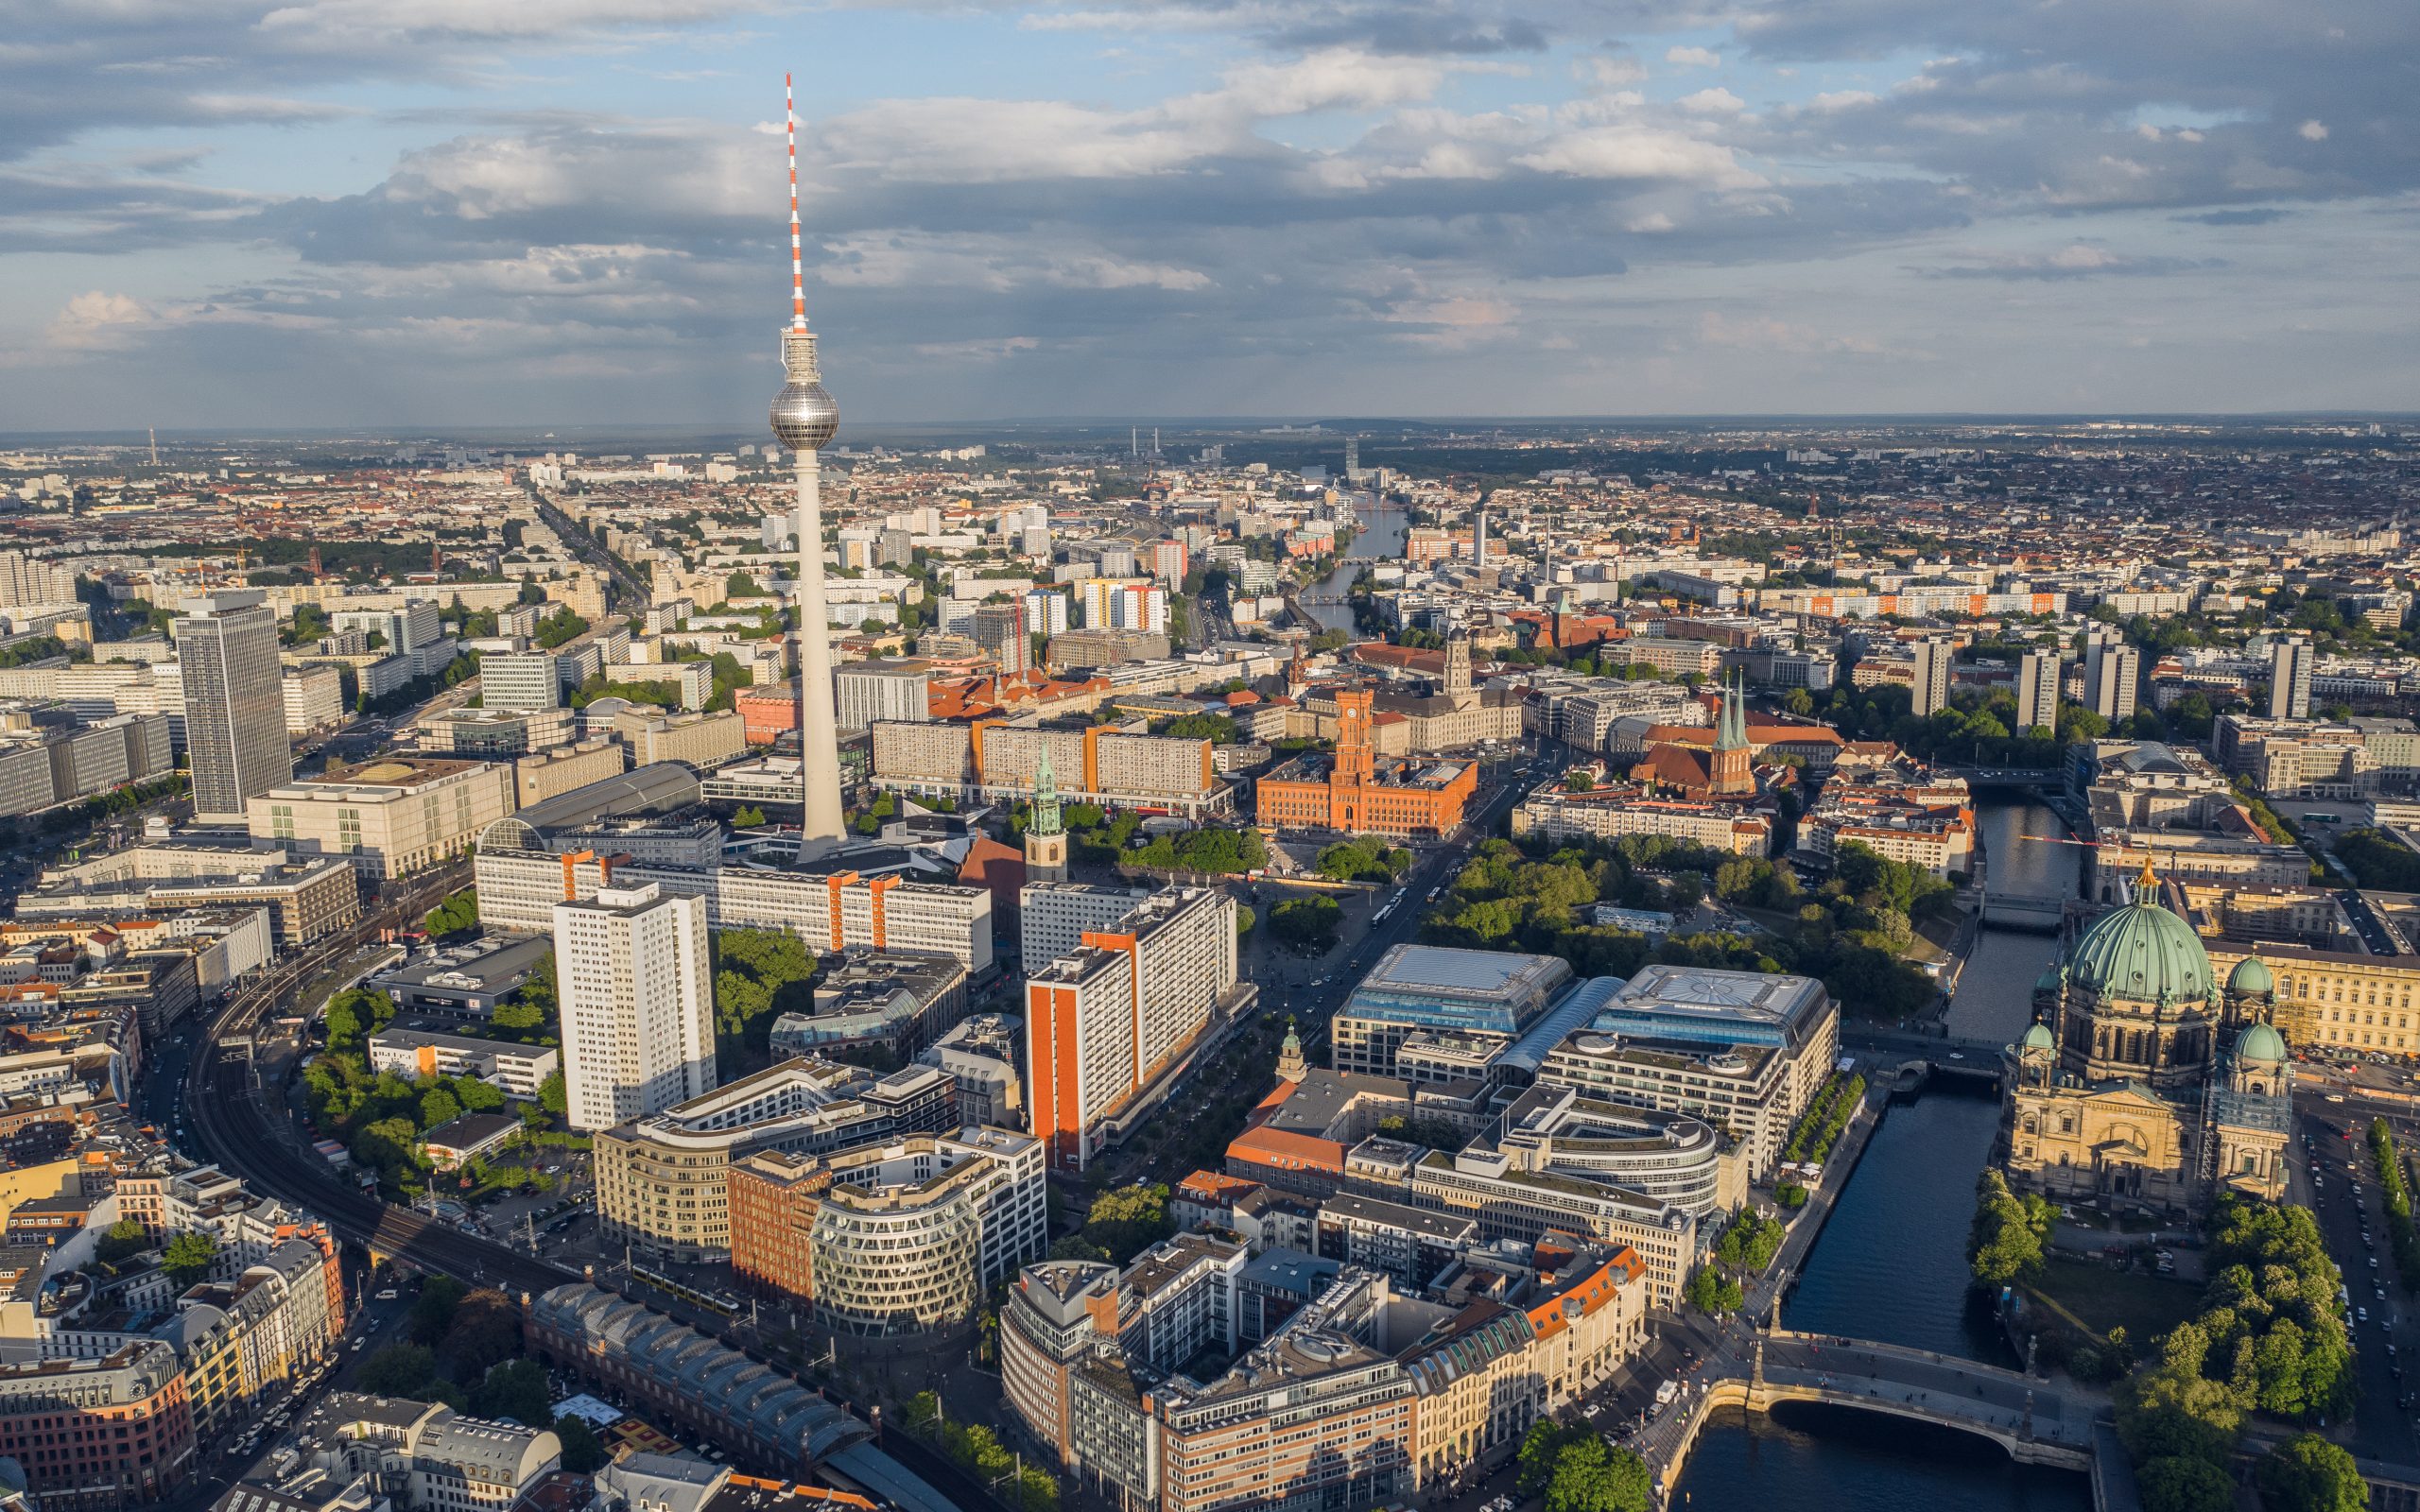 Die besten Orte zum Übernachten in Berlin: Stadtteile und Tipps